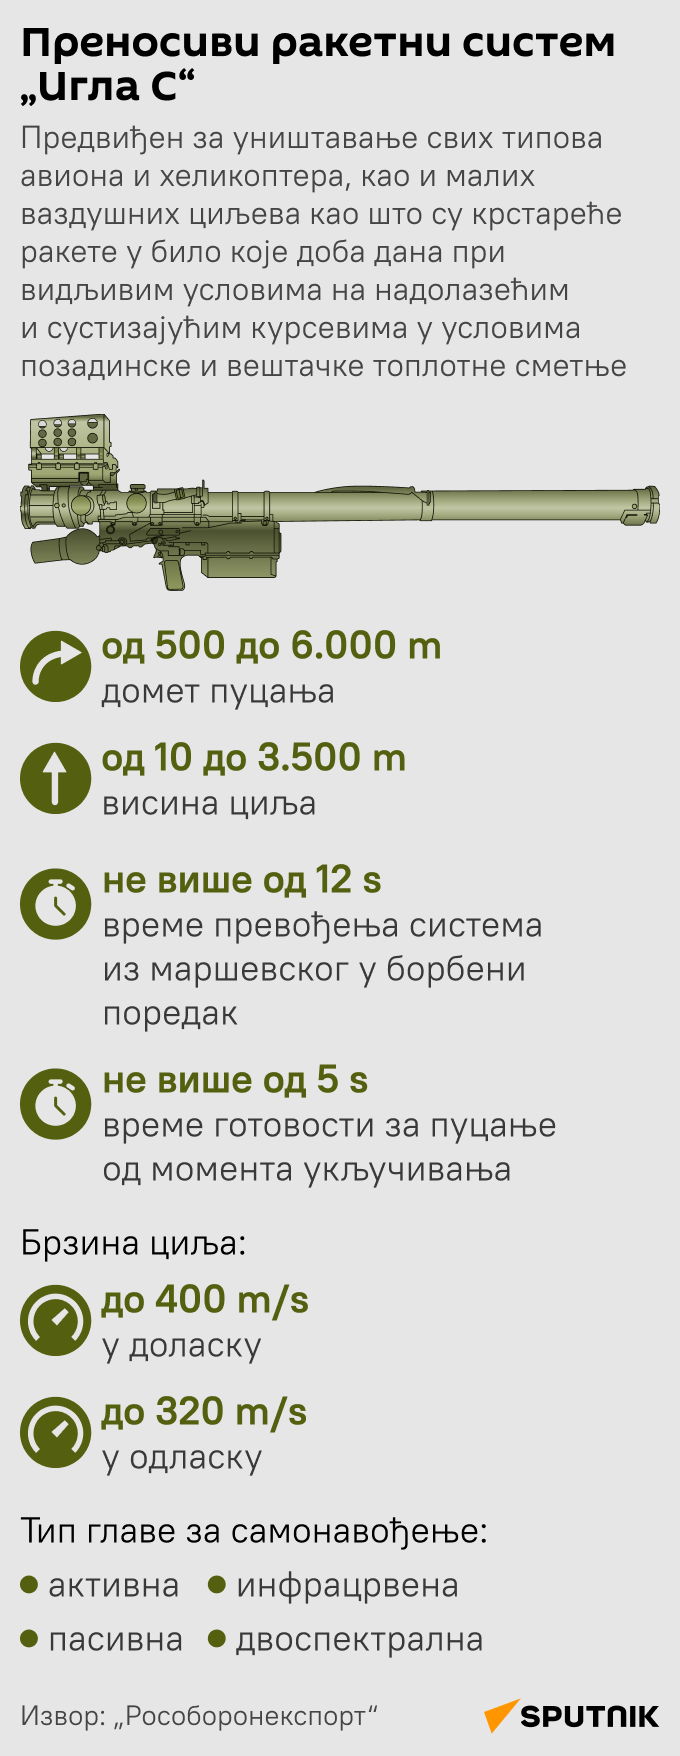 Инфографика Преносиви ракетни систем „Игла С“ ЋИР моб - Sputnik Србија